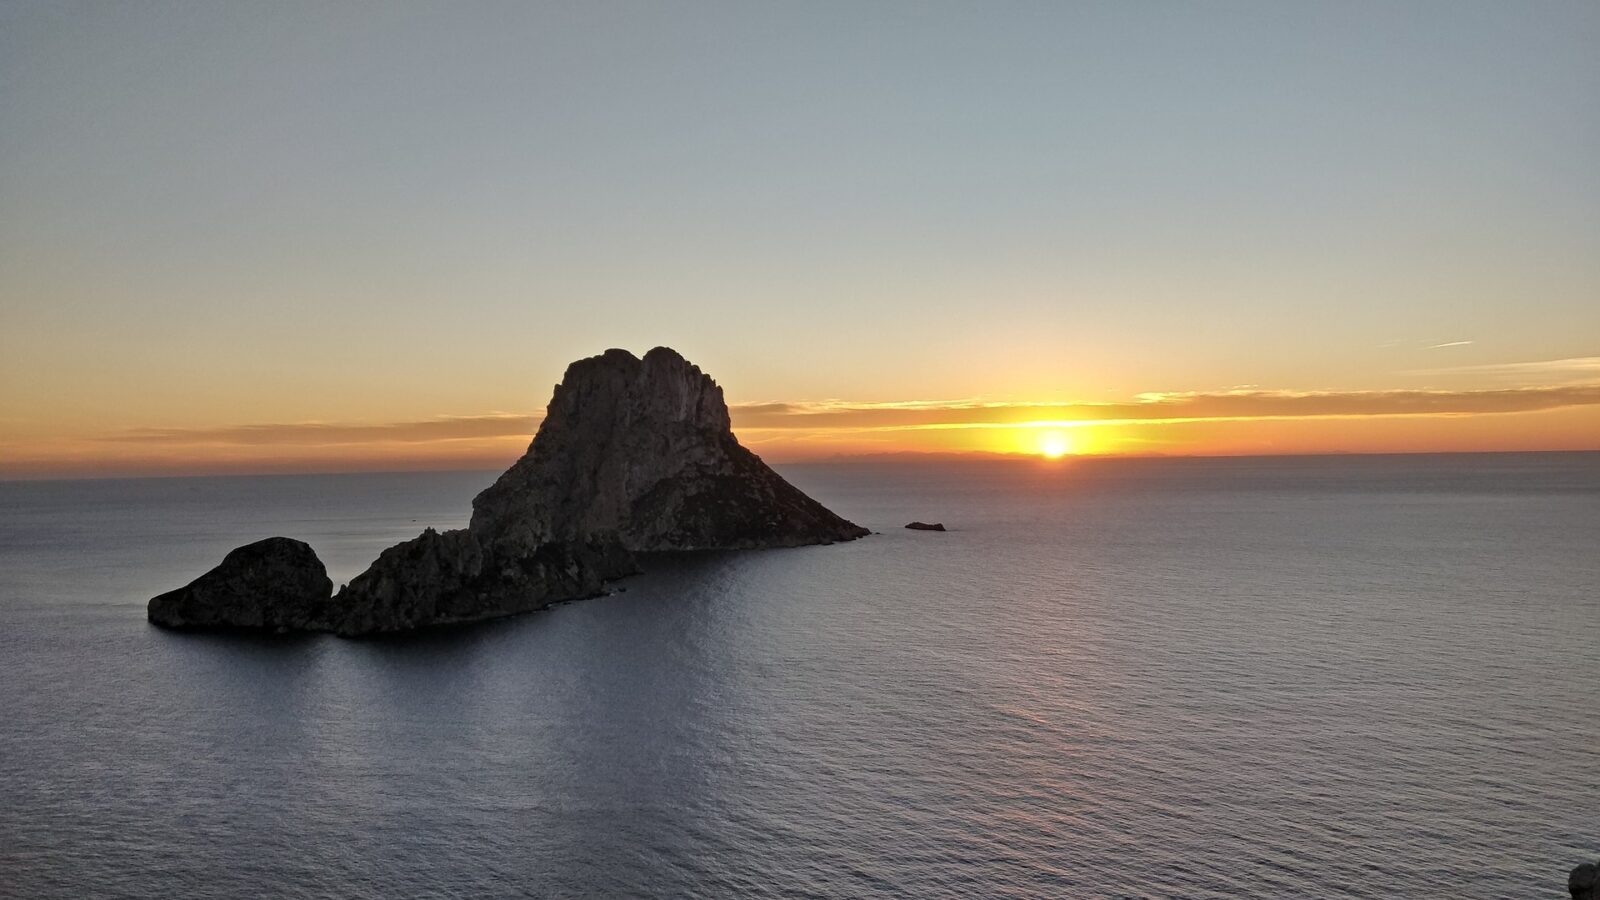 Image capturée à Ibiza, berceau du son Balearic Trance.